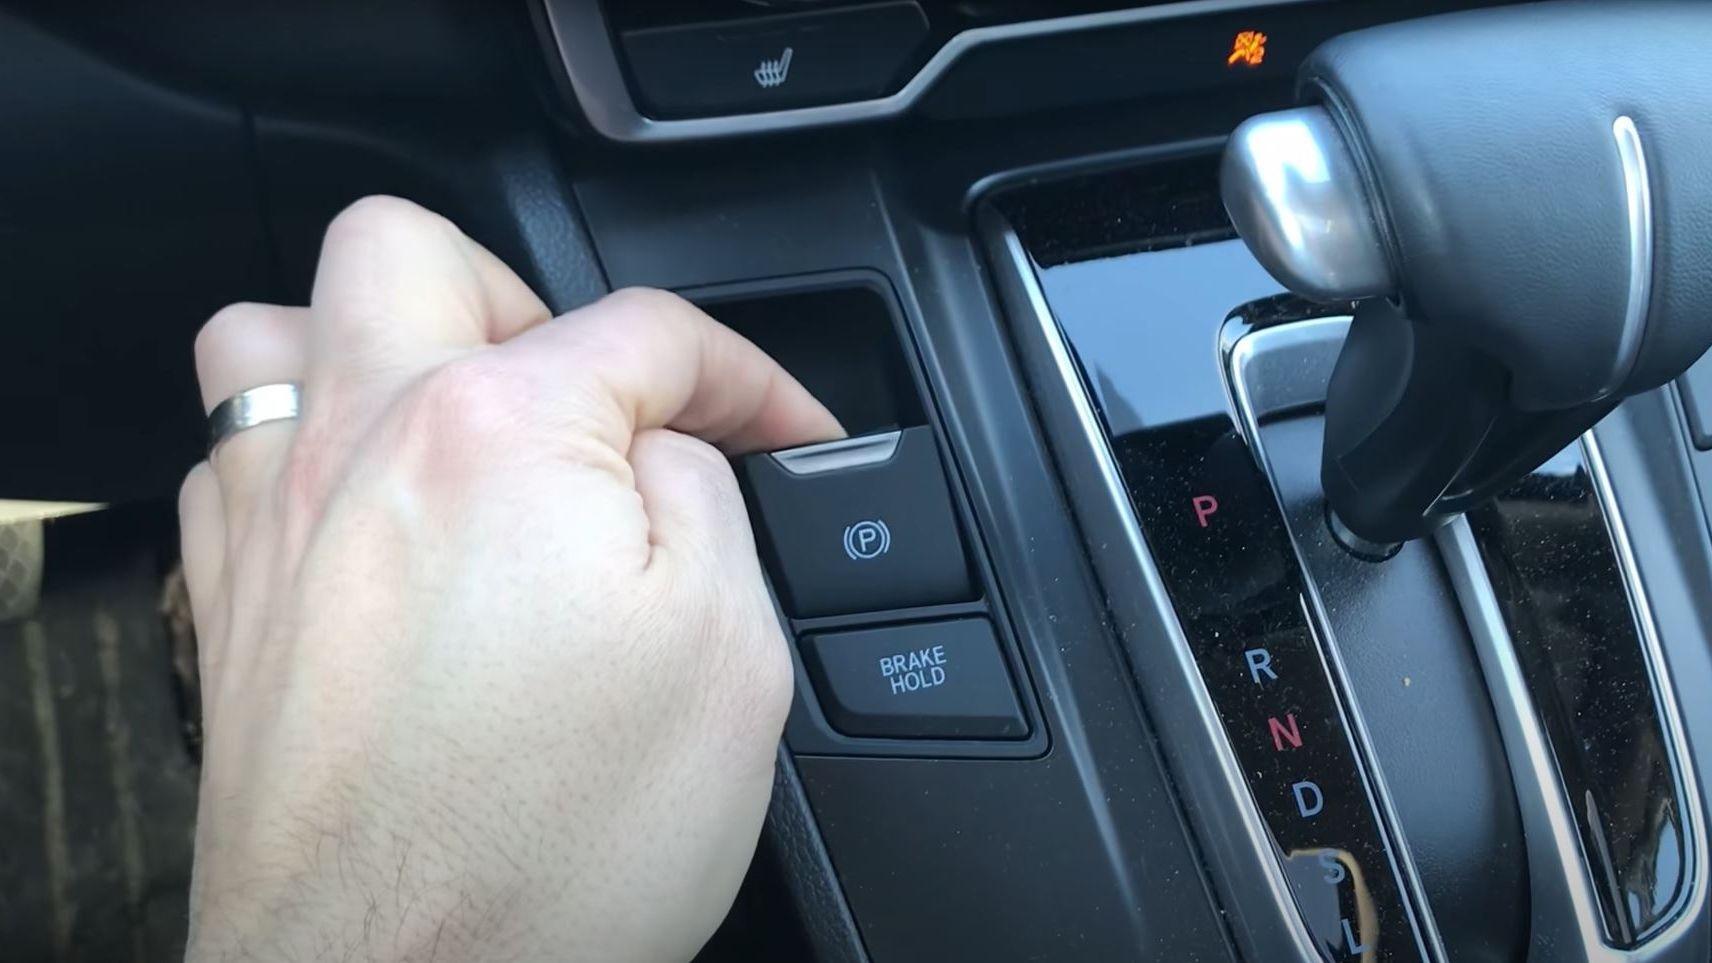 Kỹ sư ô tô kiêm YouTuber: Phanh tay điện tử là trang bị ‘ngu ngốc’, nguy hiểm - ảnh 1